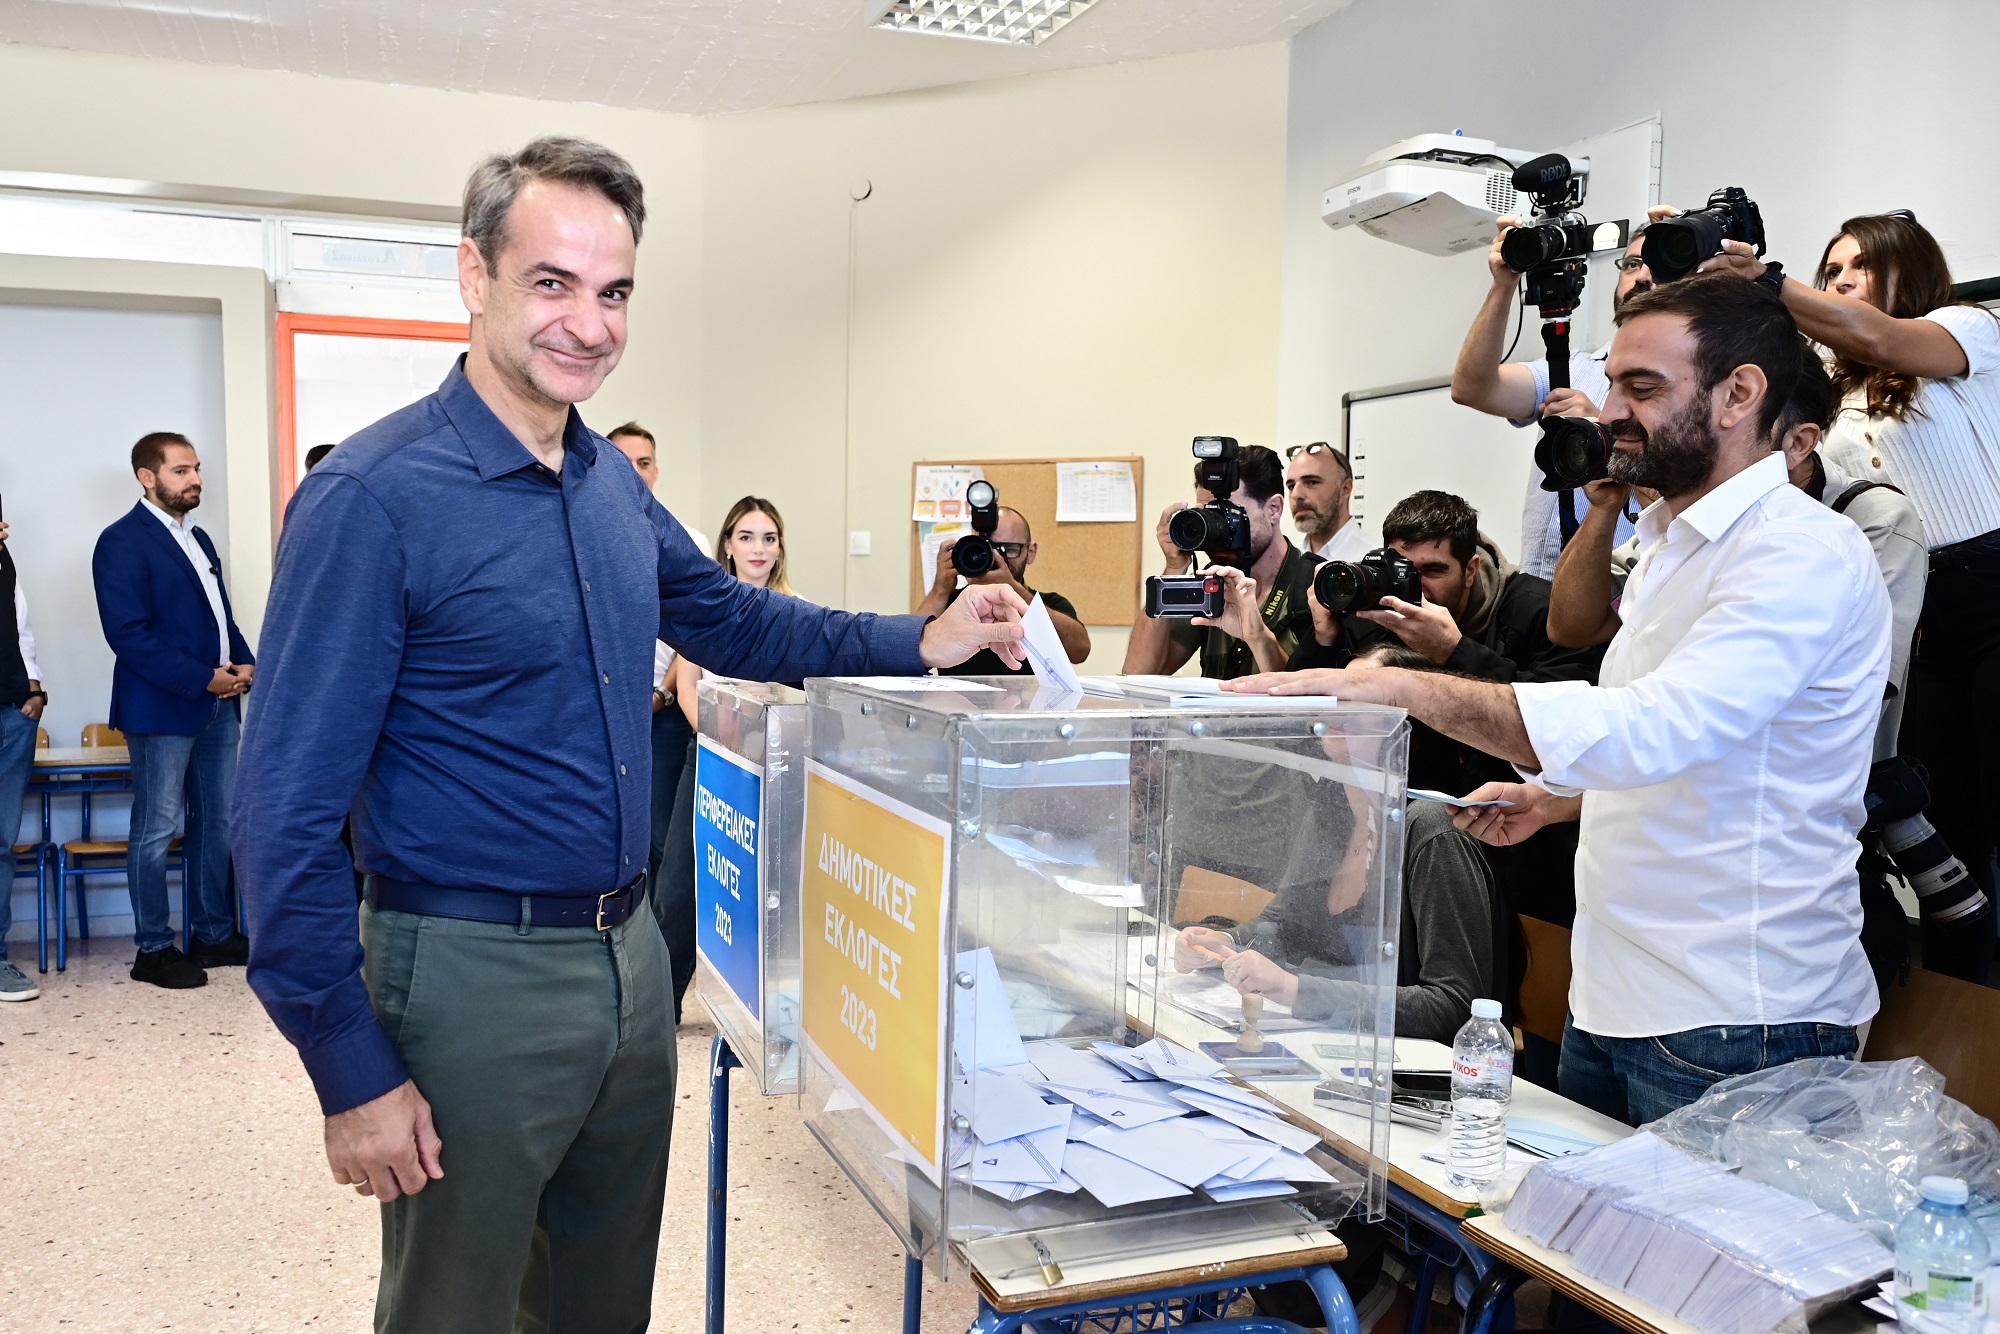 Ψήφισε ο Κυριάκος Μητσοτάκης – «Σήμερα η μεγάλη γιορτή της Αυτοδιοίκησης, ψηφίζουμε για μια καλύτερη καθημερινότητα»